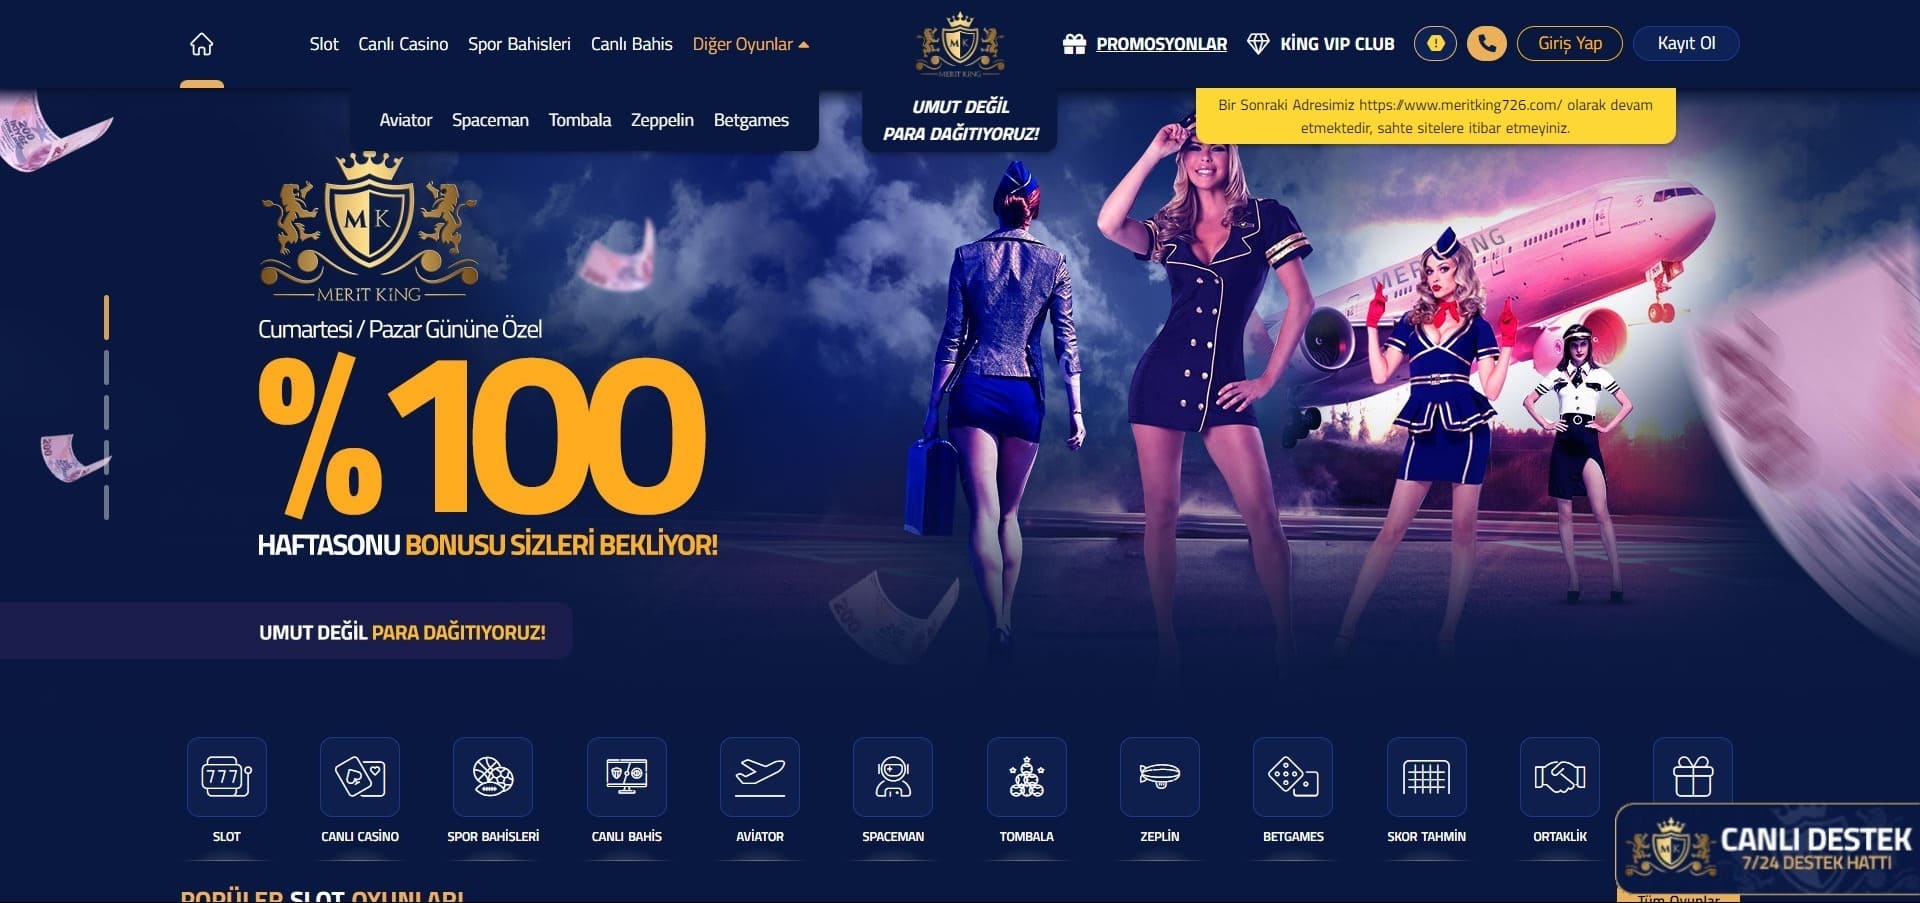 Meritroyalbet Casino'nun resmi web sitesi